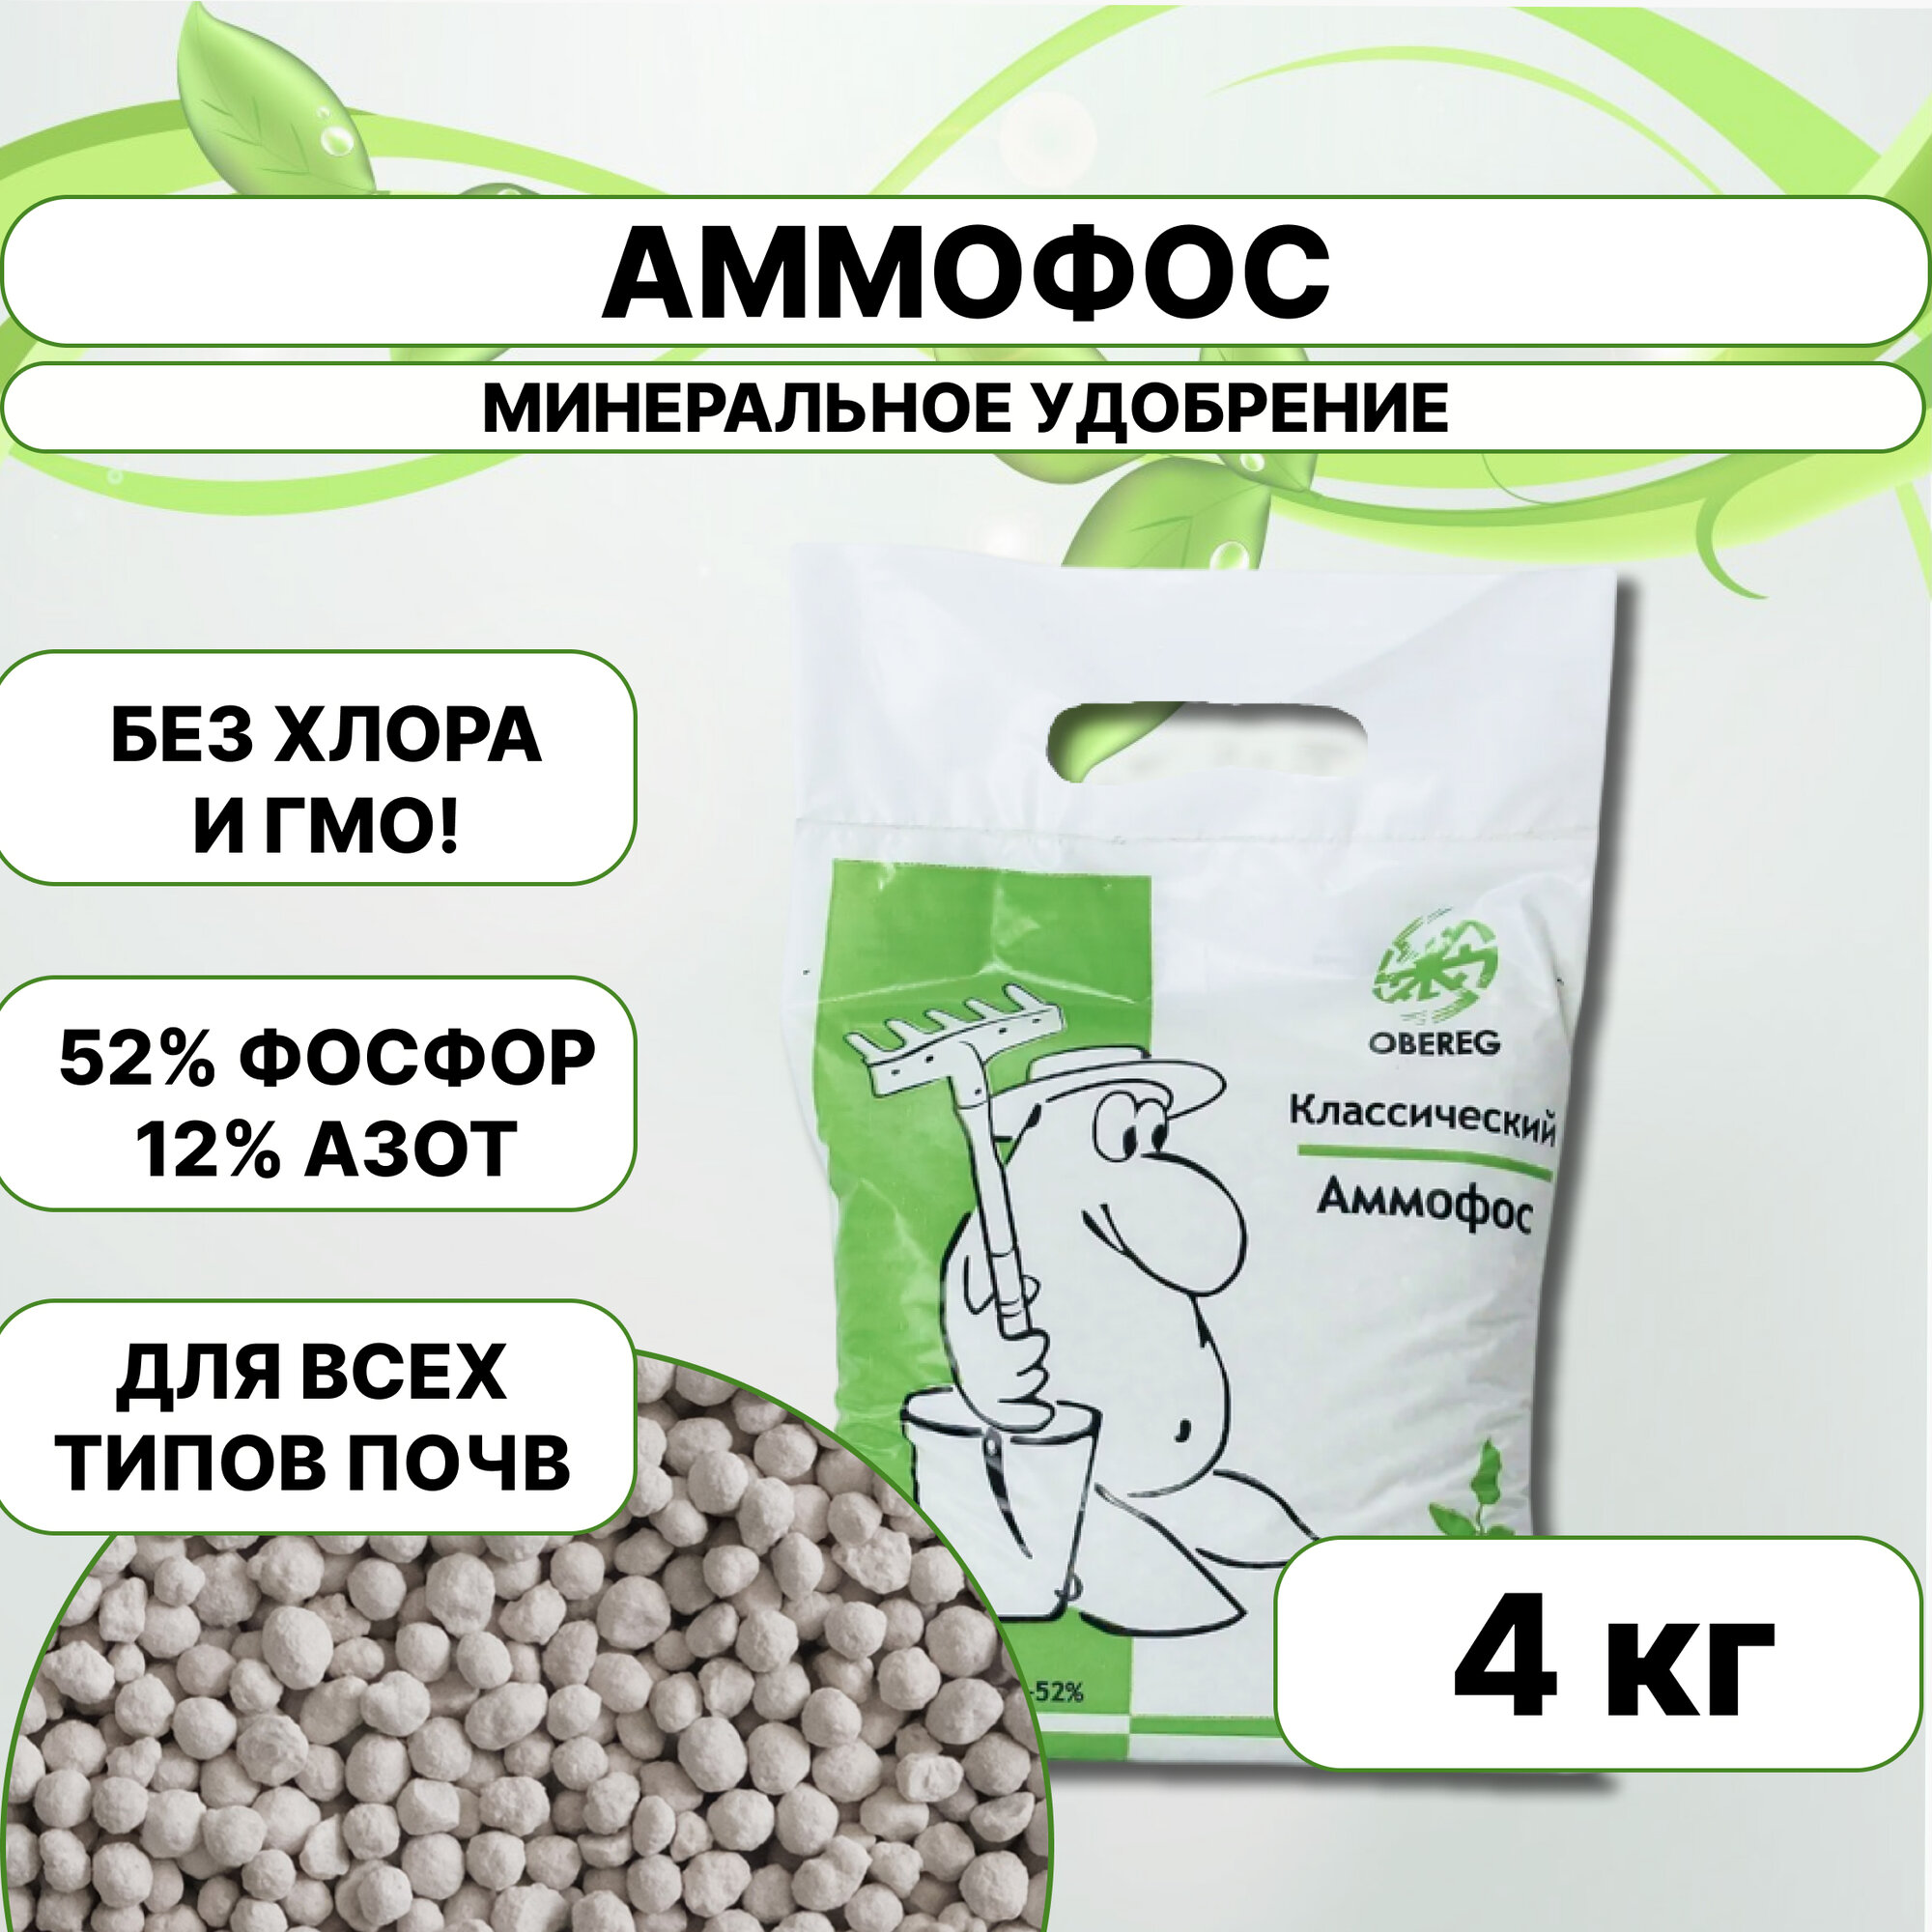 Фосфорное азотное удобрение аммофос (фосфорнокислый аммоний) оберег 5 шт. по 2 кг.